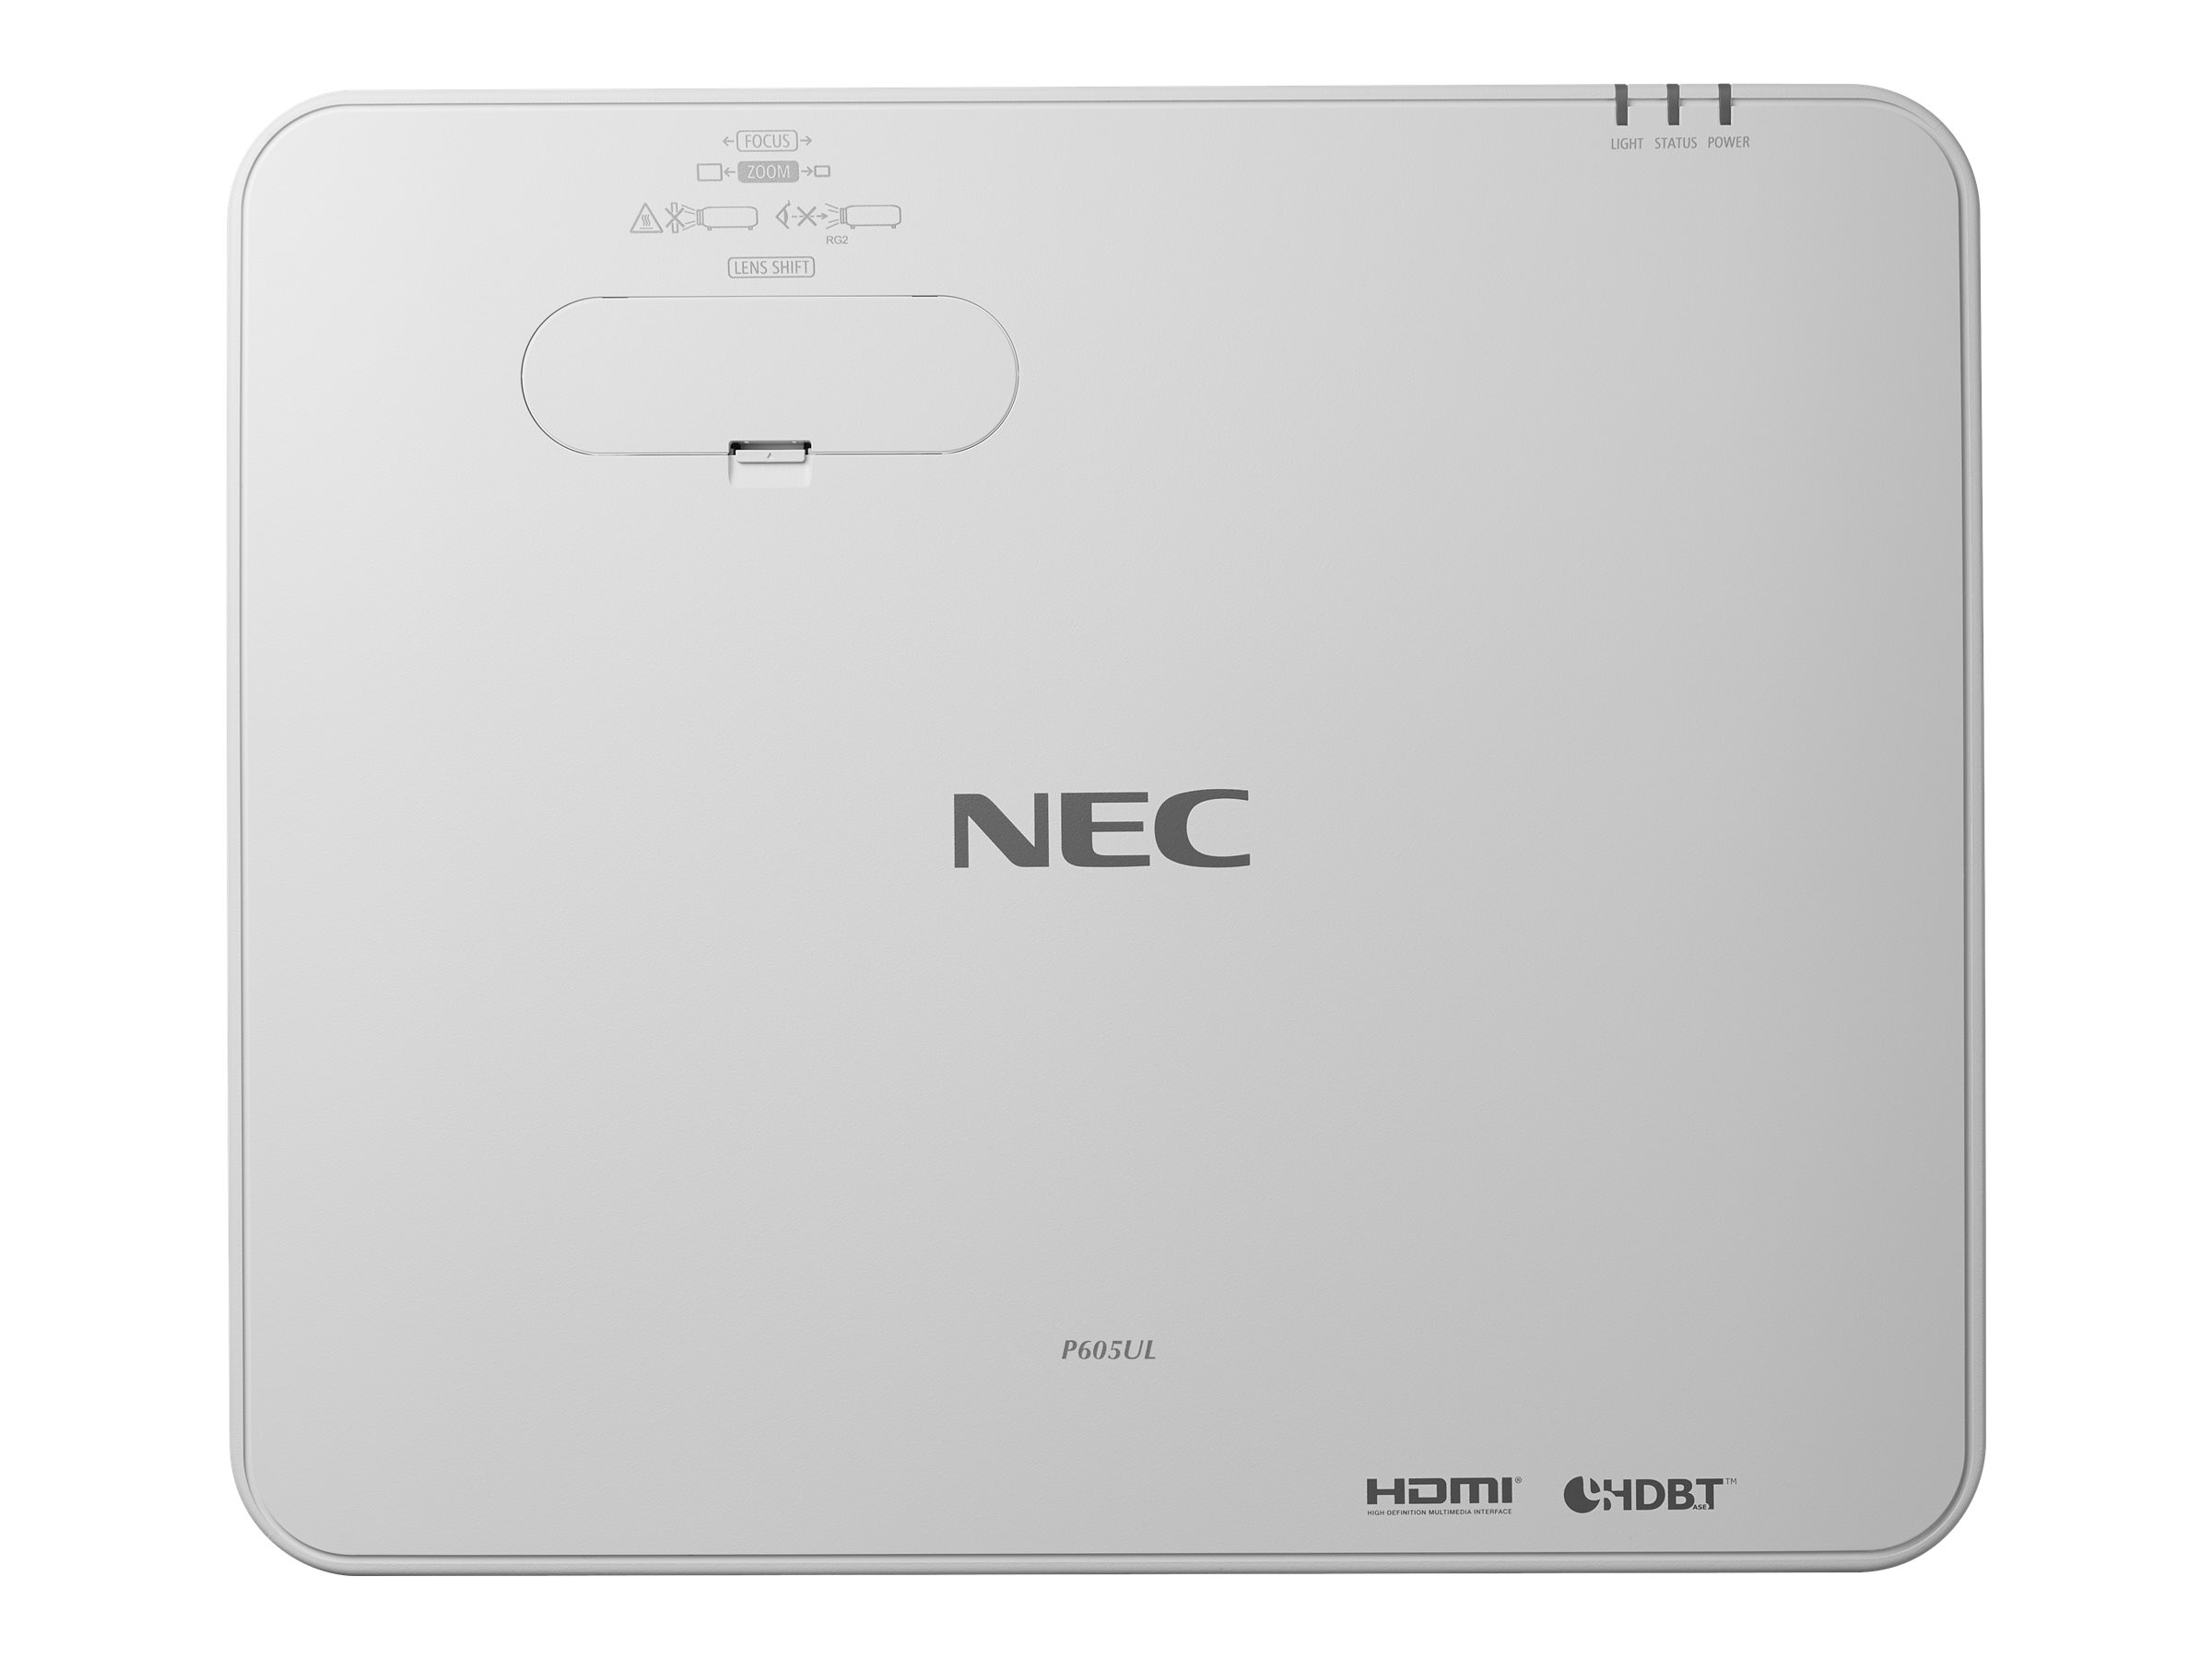 NEC P605UL - Projecteur 3LCD - 6000 lumens - WUXGA (1920 x 1200) - 16:10 - 1080p - objectif zoom - LAN - blanc - 60004811 - Projecteurs numériques